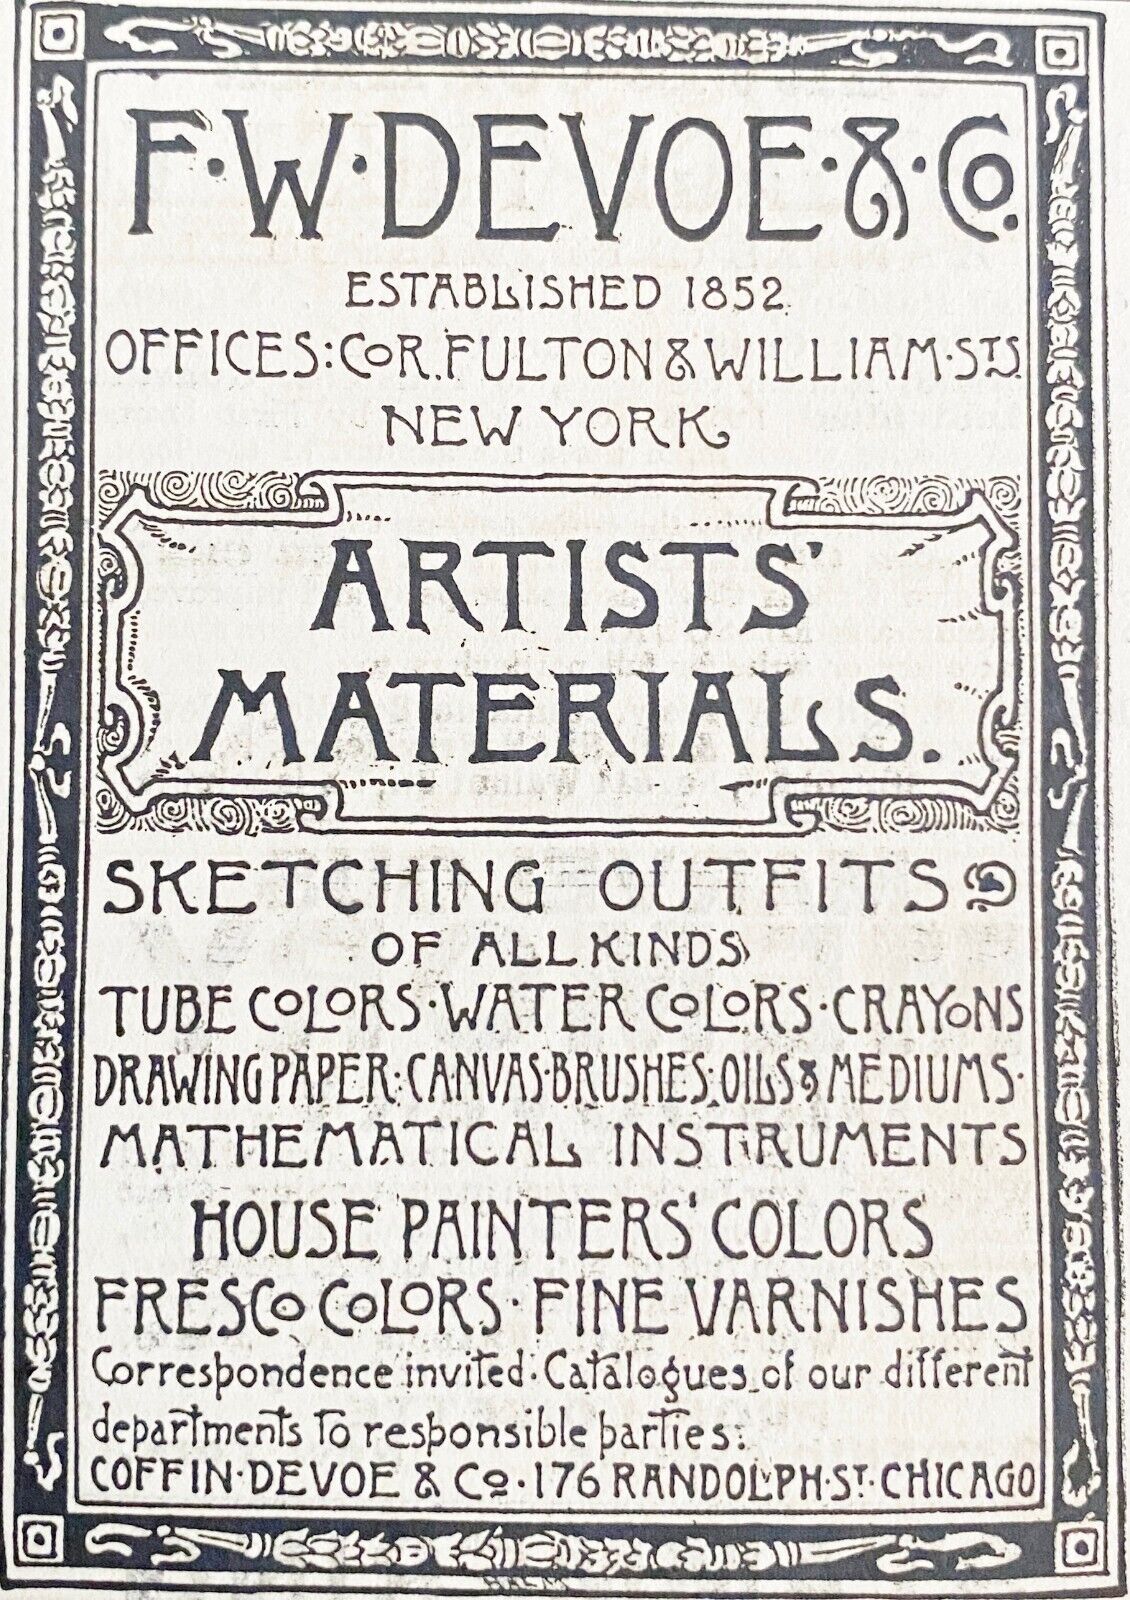 Antique1887 DEVOE&CO Art Nouveau Typography Print Ad for Sketch Artist Materials